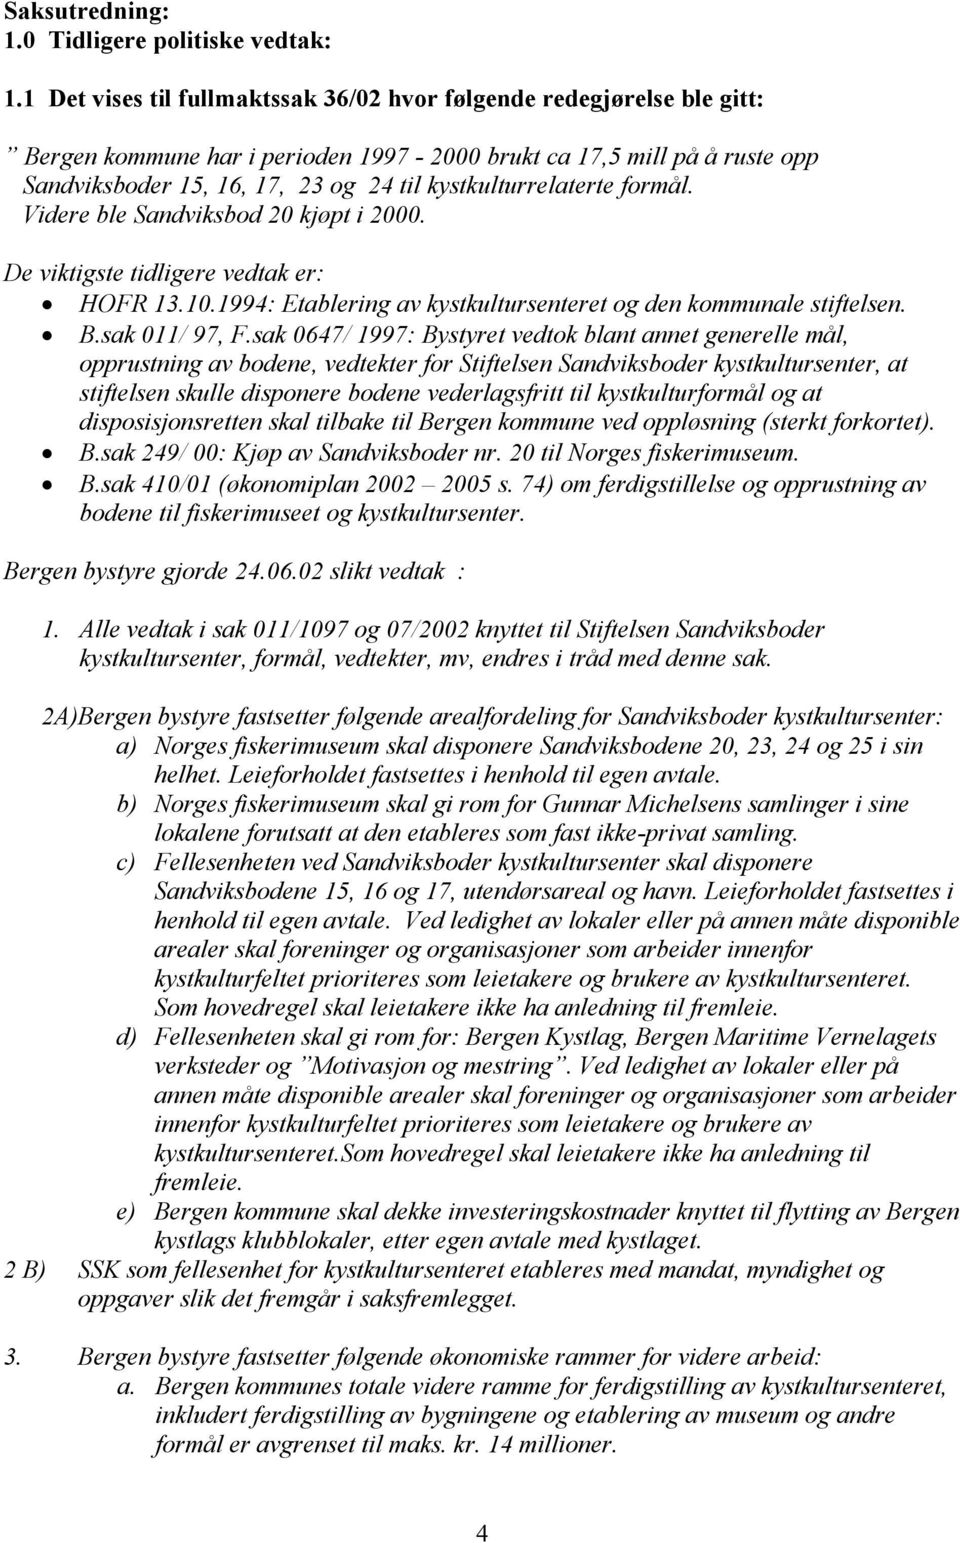 kystkulturrelaterte formål. Videre ble Sandviksbod 20 kjøpt i 2000. De viktigste tidligere vedtak er: HOFR 13.10.1994: Etablering av kystkultursenteret og den kommunale stiftelsen. B.sak 011/ 97, F.